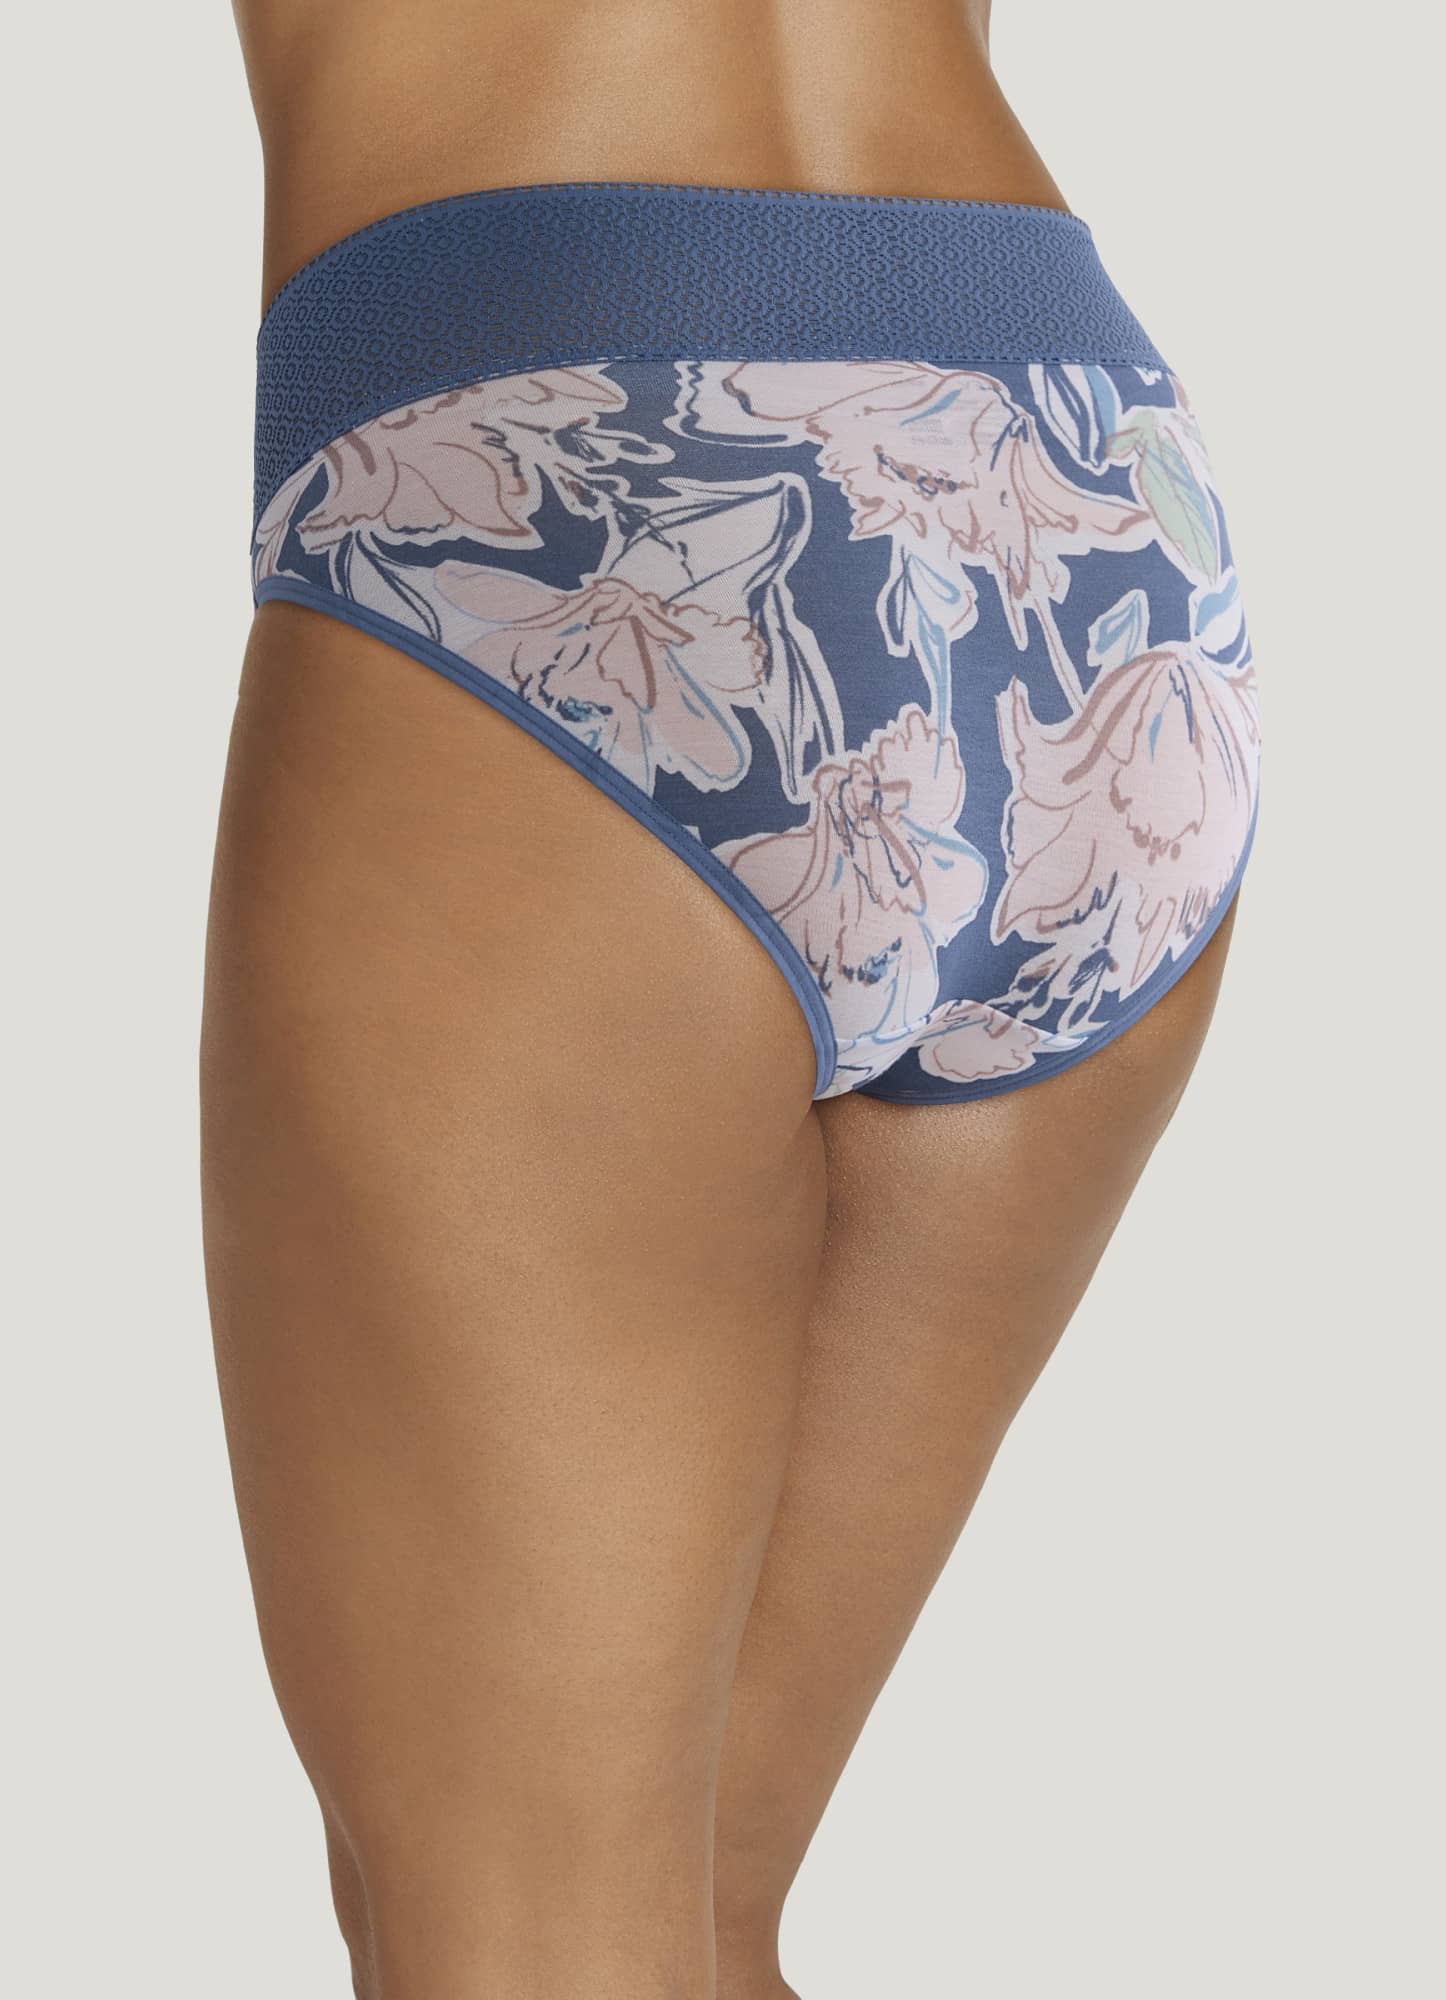 Jockey Women's Soft Lace String Bikini Underwear 3211